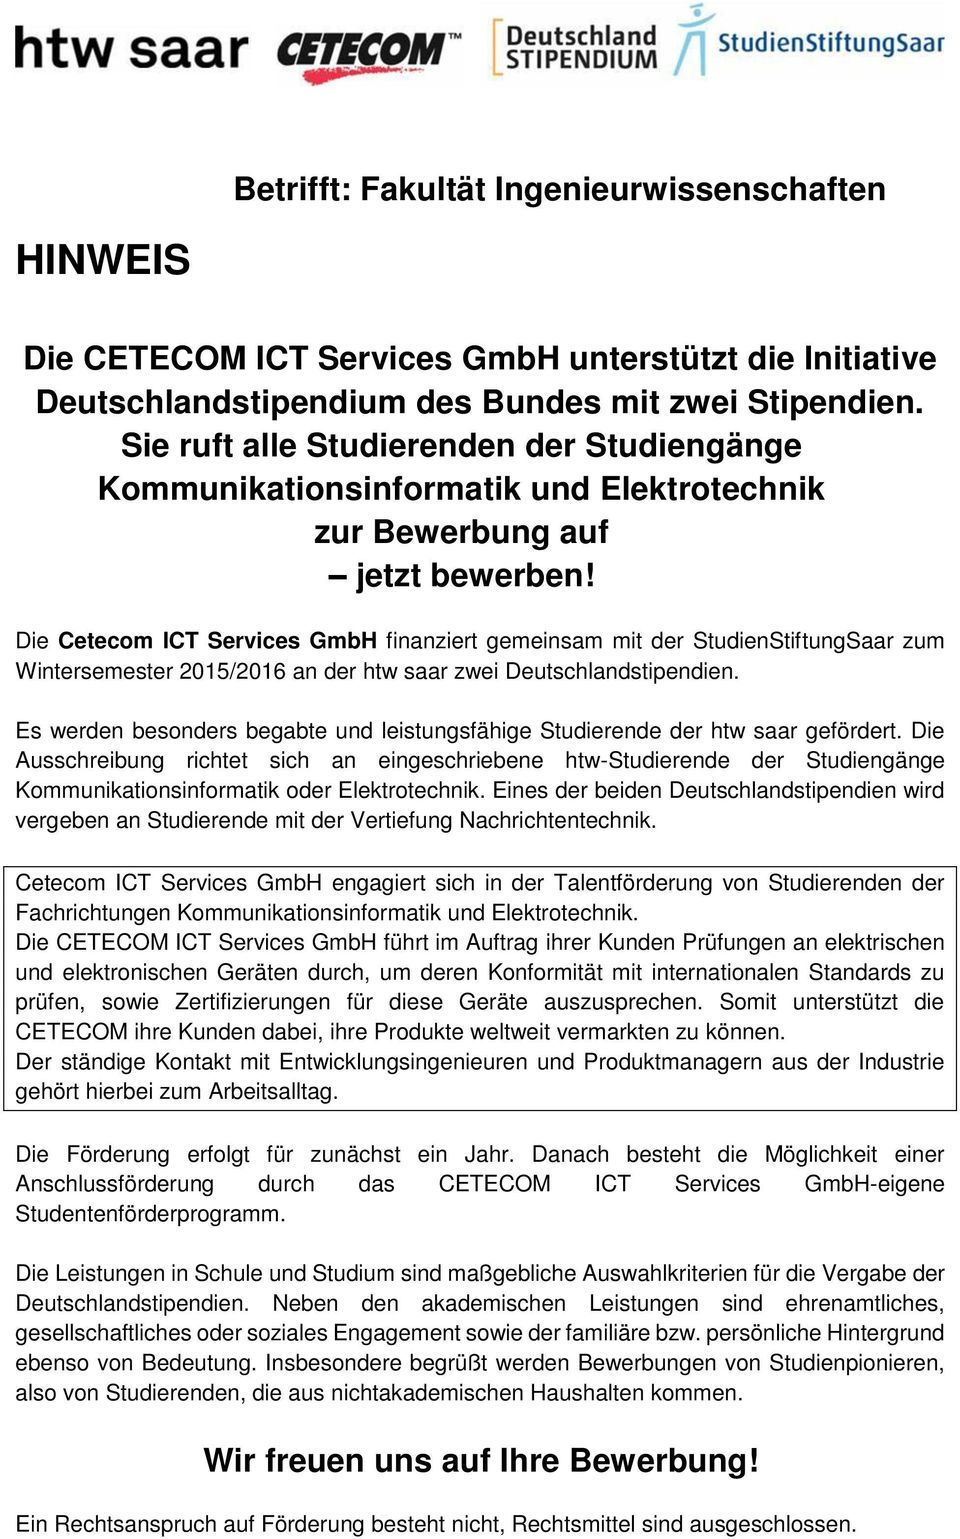 Die Cetecom ICT Services GmbH finanziert gemeinsam mit der StudienStiftungSaar zum Wintersemester 2015/2016 an der htw saar zwei Deutschlandstipendien.